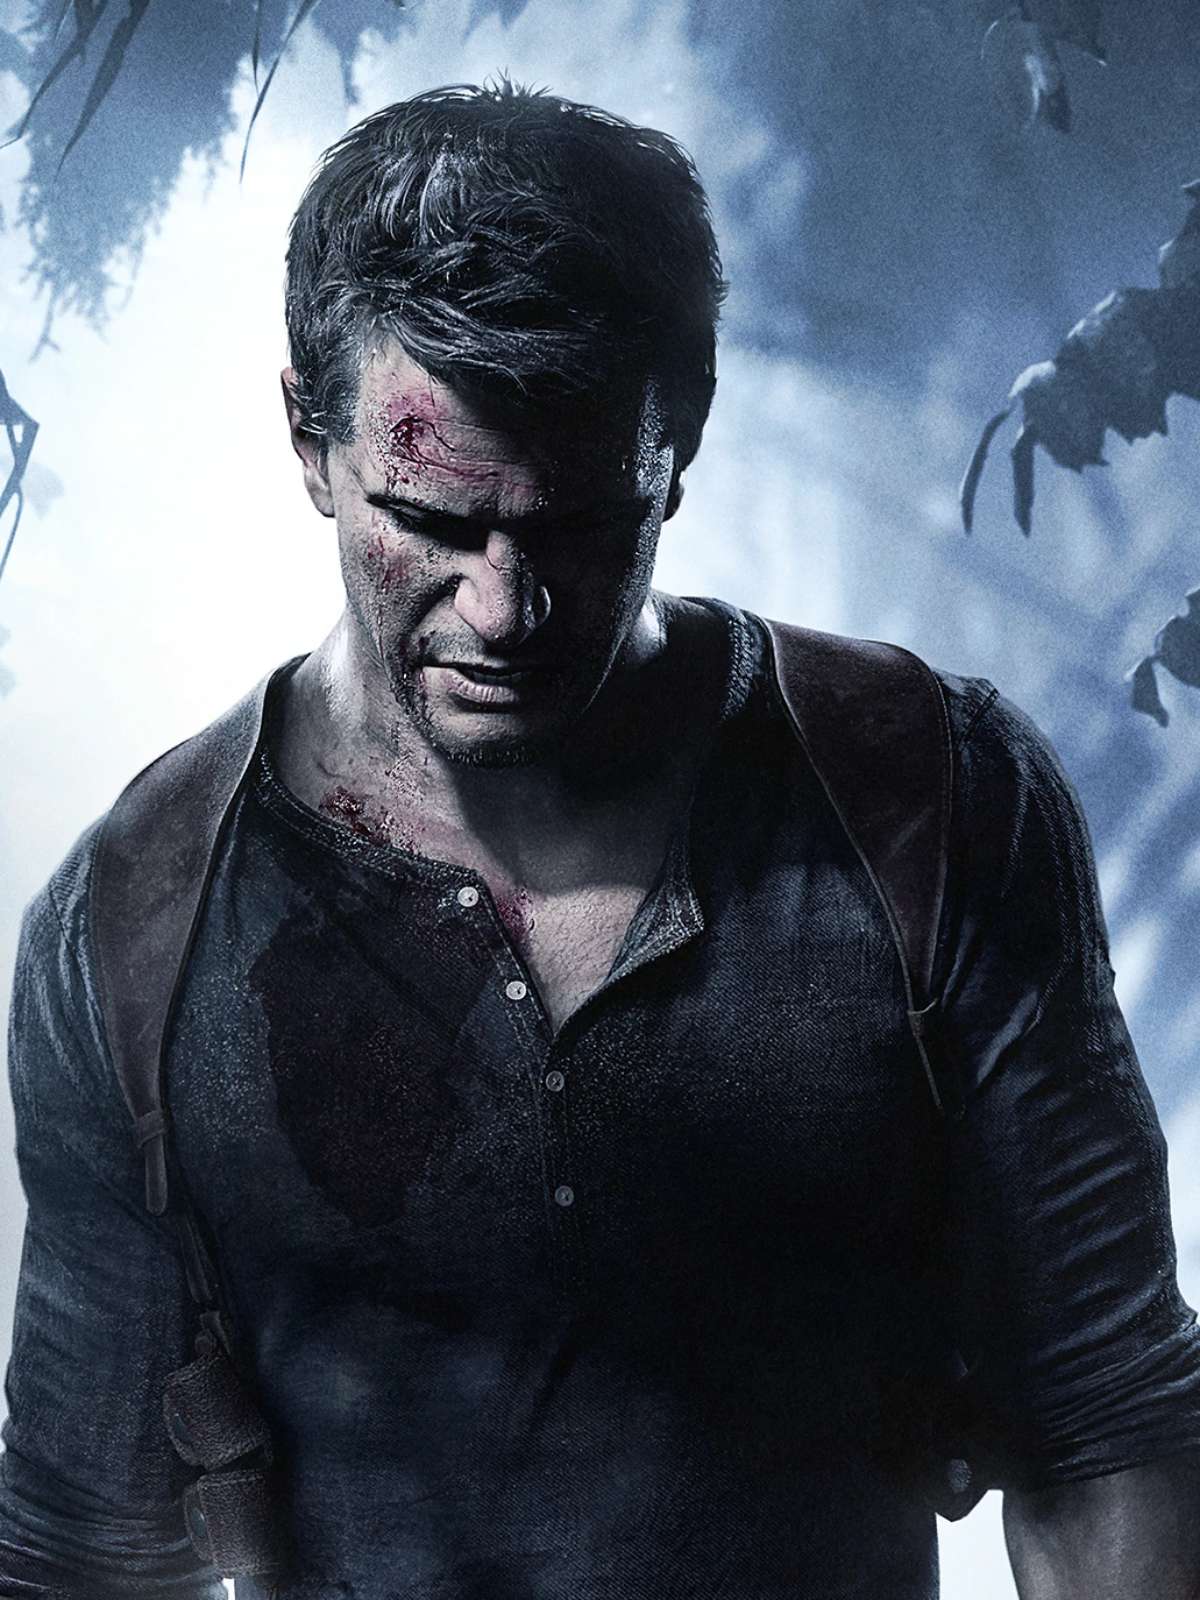 Uncharted 4' será lançado para PC, revela relatório da Sony - Olhar Digital